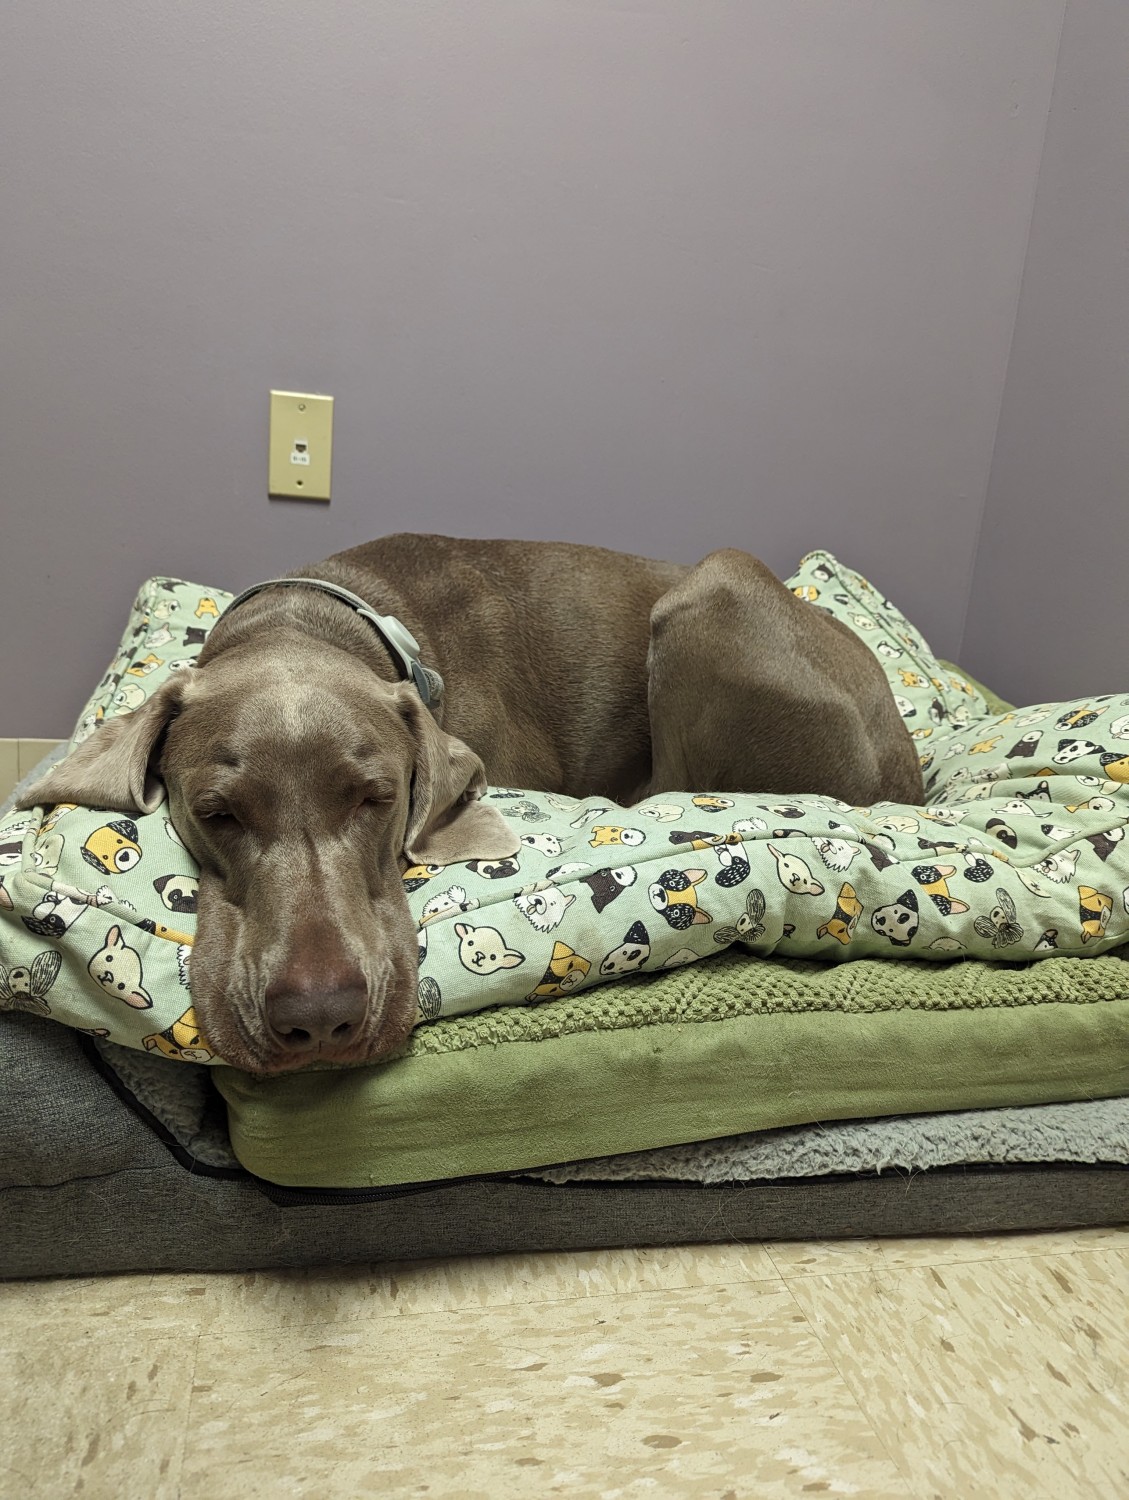 Dog sleeping in dog bed